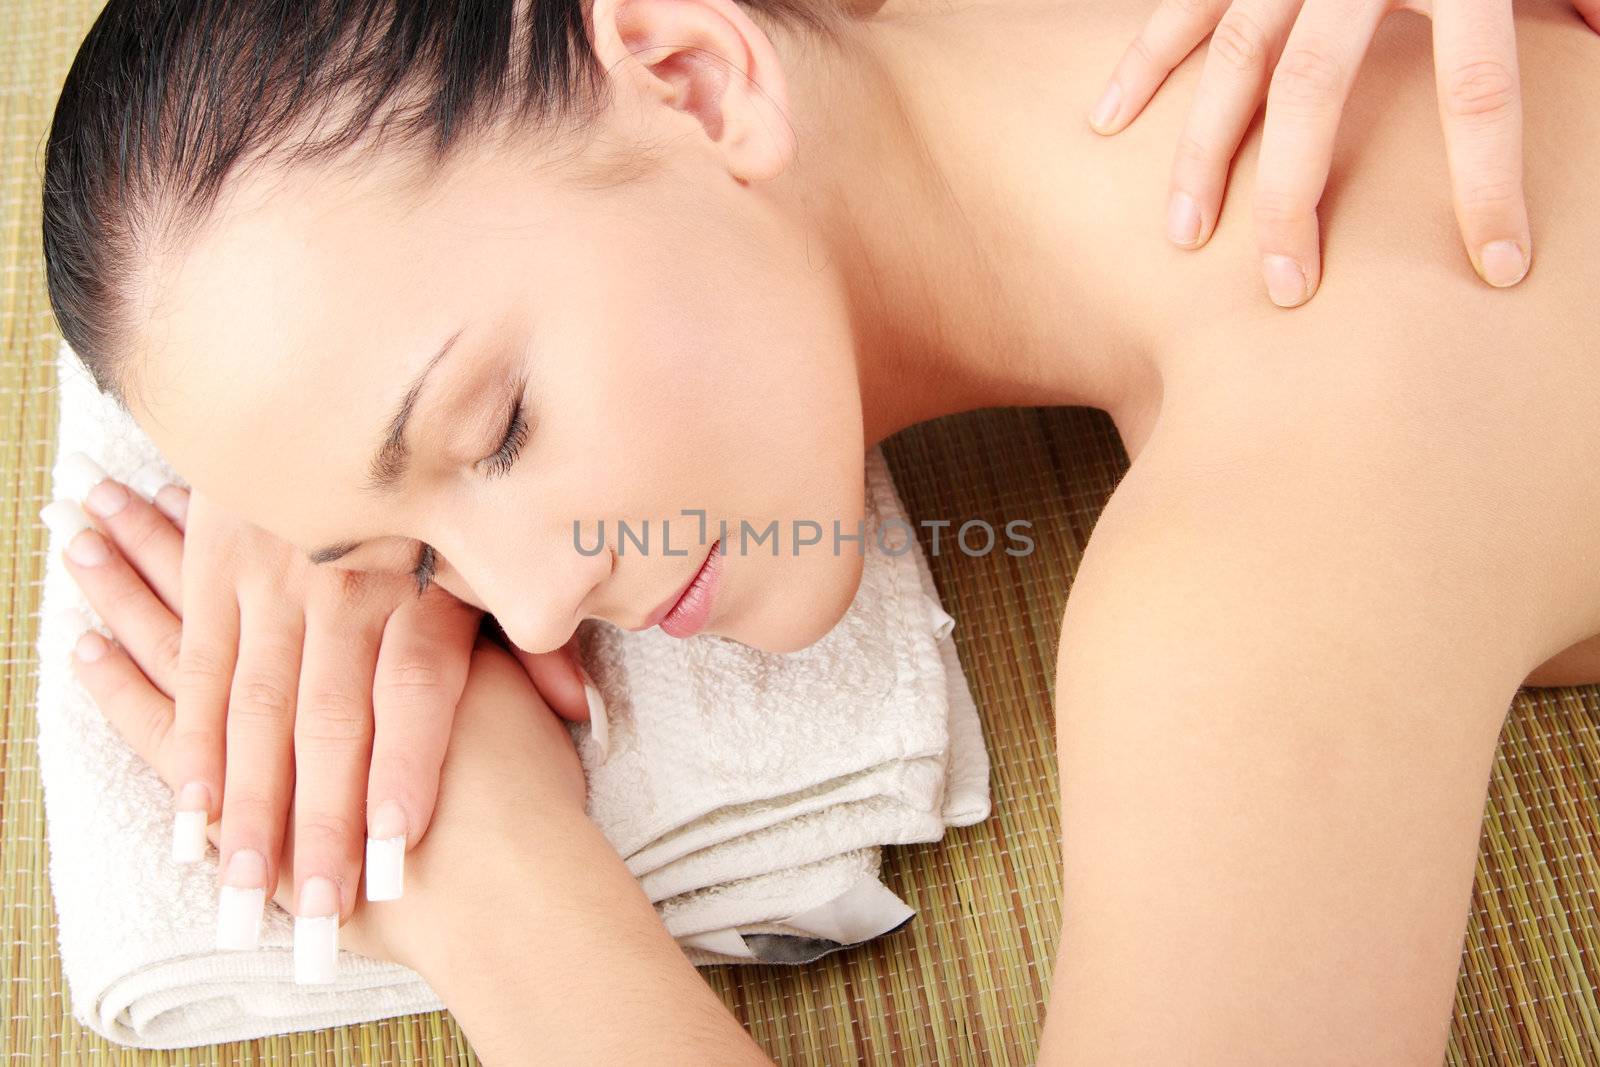 Woman Enjoying Massage by BDS